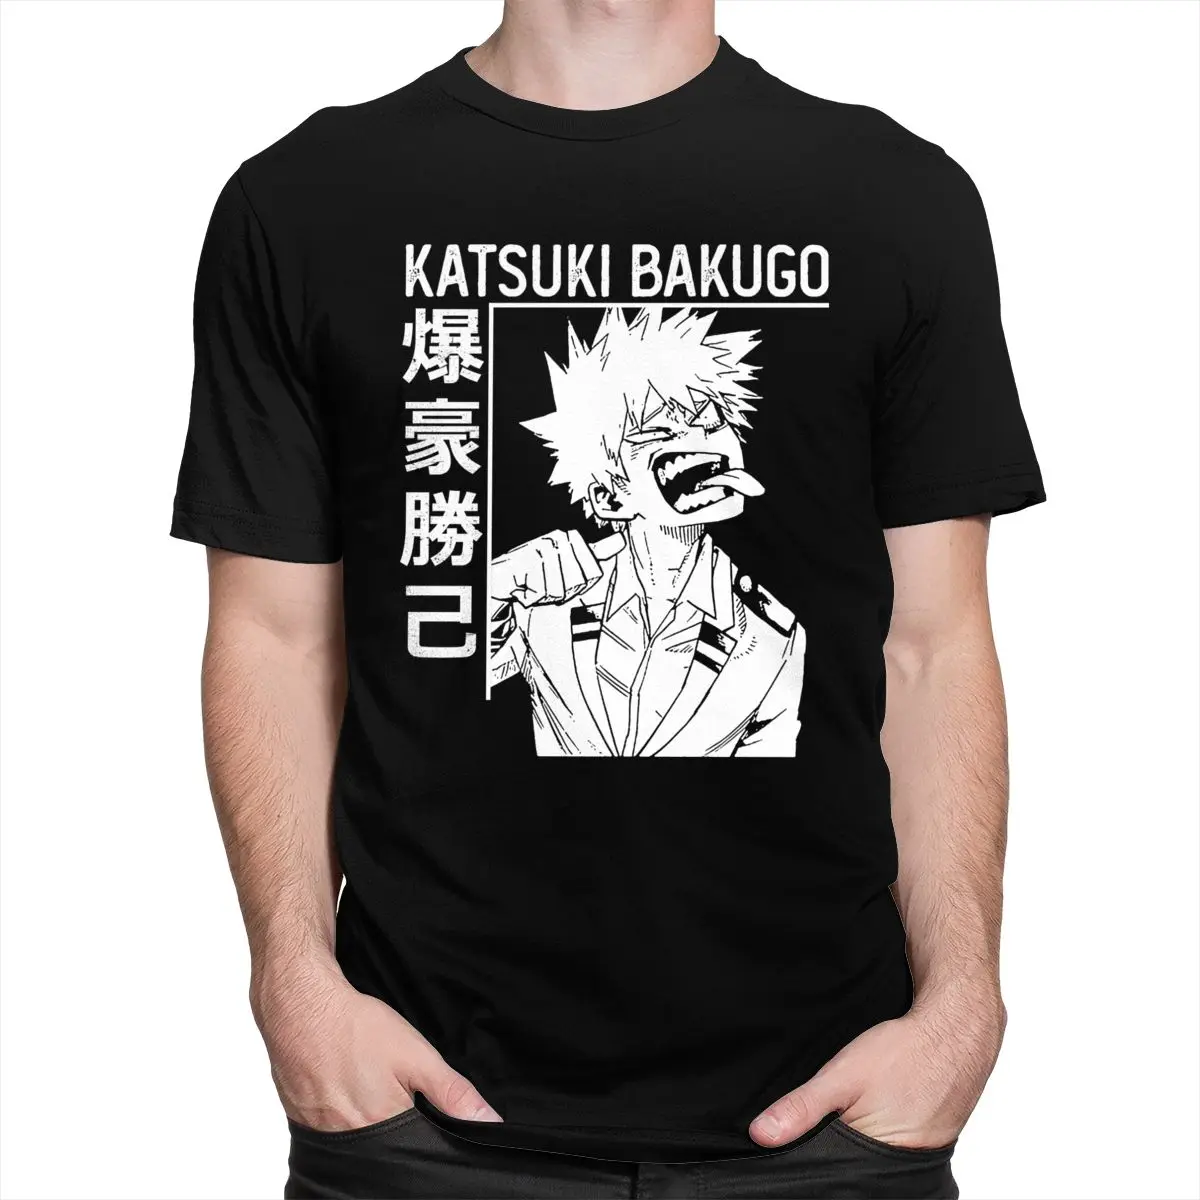 Sjove Mænd Katsuki Bakugo Boku Ikke Helt den Akademiske verden T-shirt i Bomuld Animationsfilm Tee Shirt Kort Ærme Manga Alle Kan Tshirt Merch Toppe